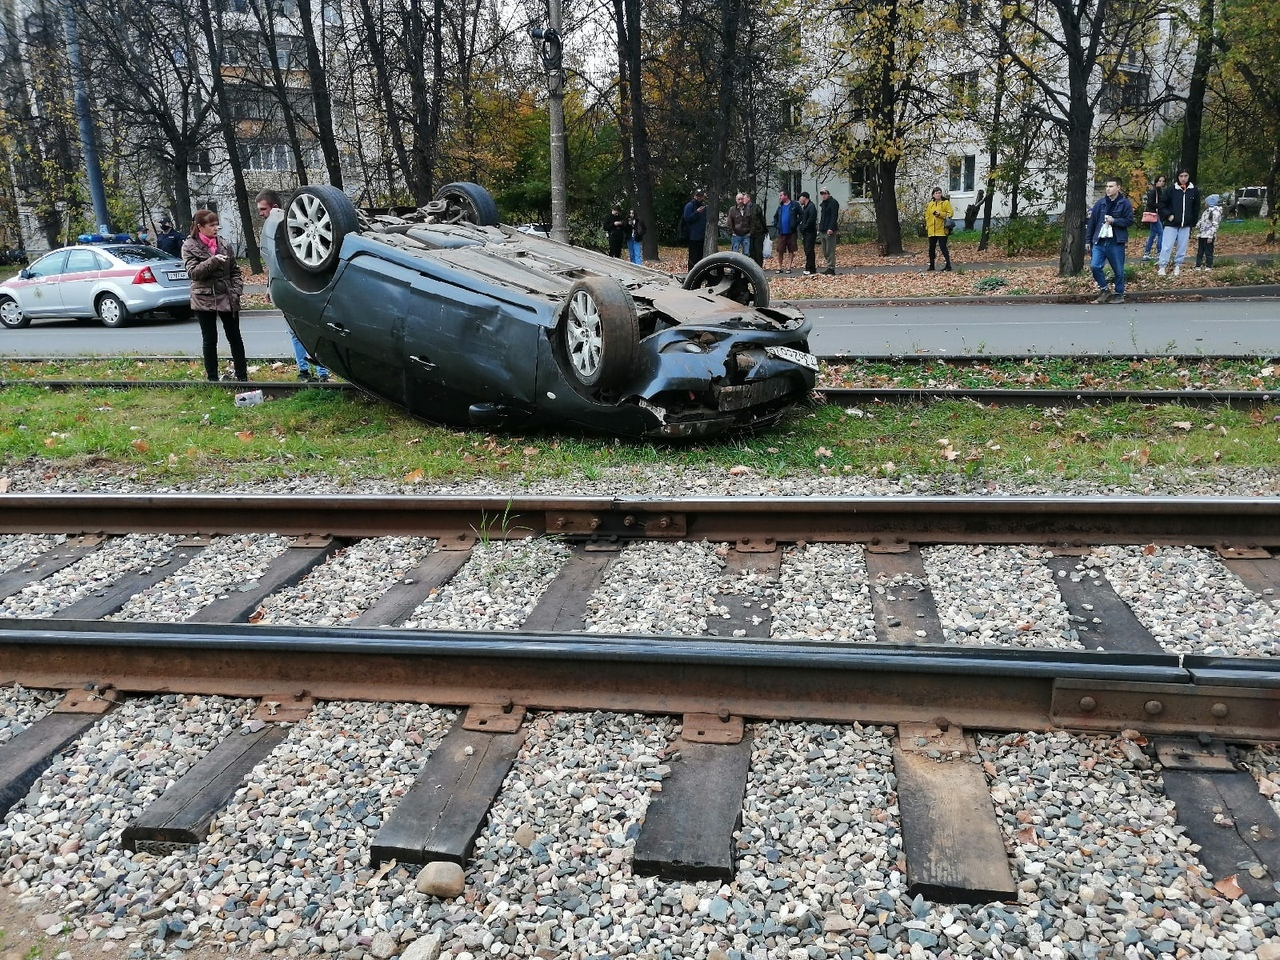 Неудачно приземлился: авто перевернулось на трамвайные пути в Ярославле